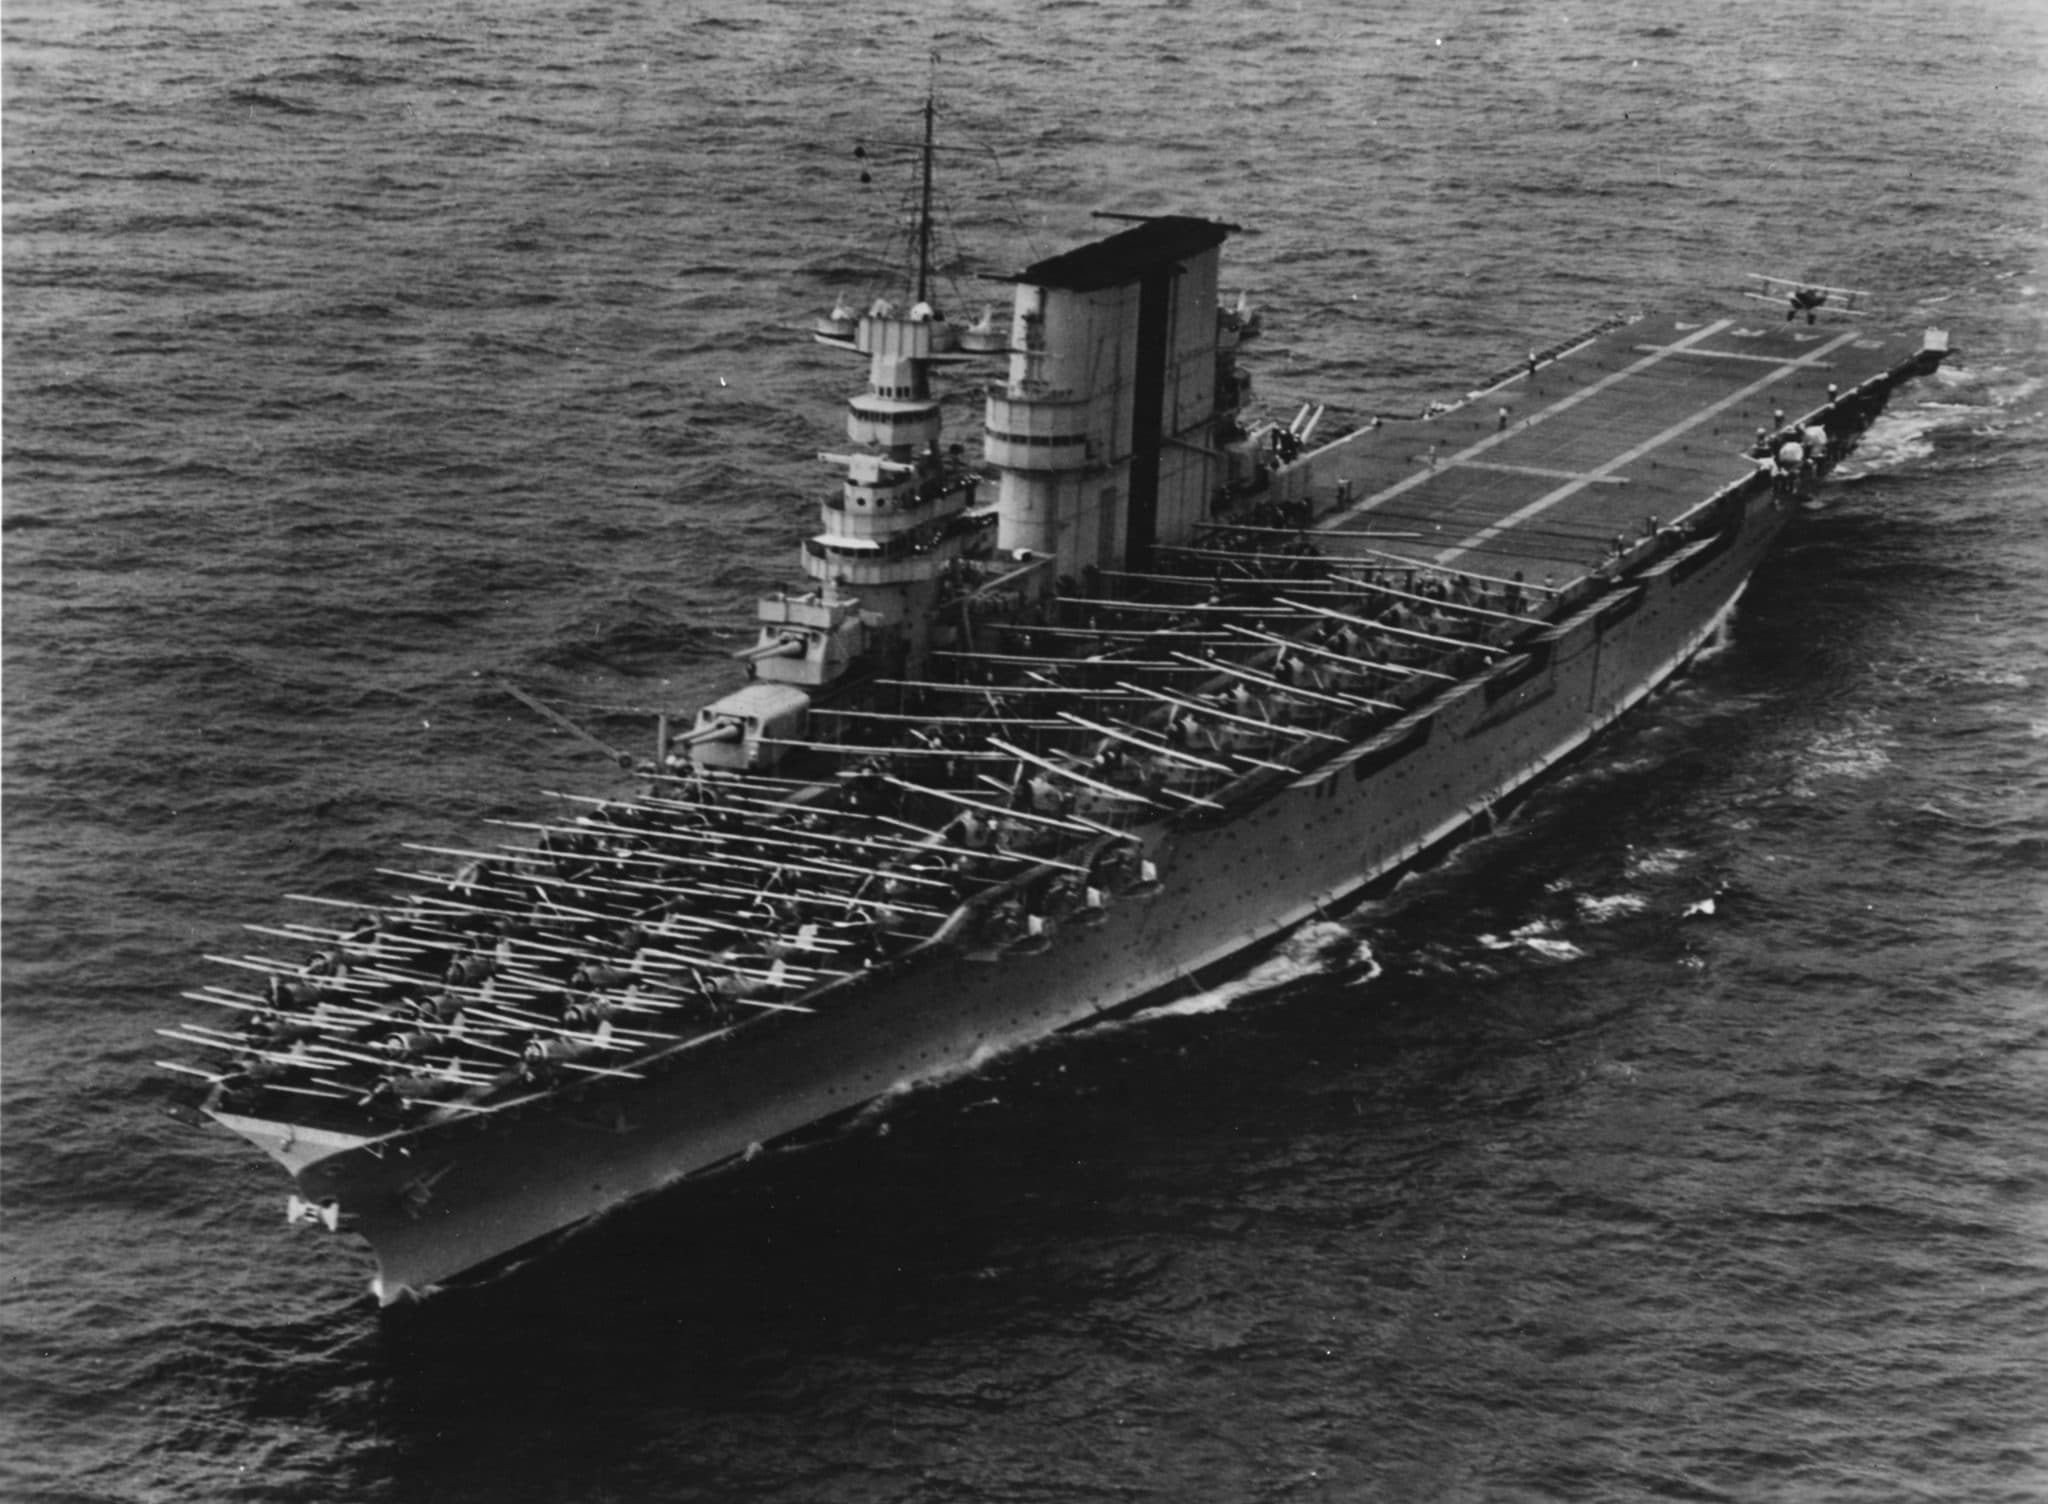 L'USS Saratoga en 1935. On remarque ses tourelles doubles de 8 pouces (203 mm) devant l'îlot